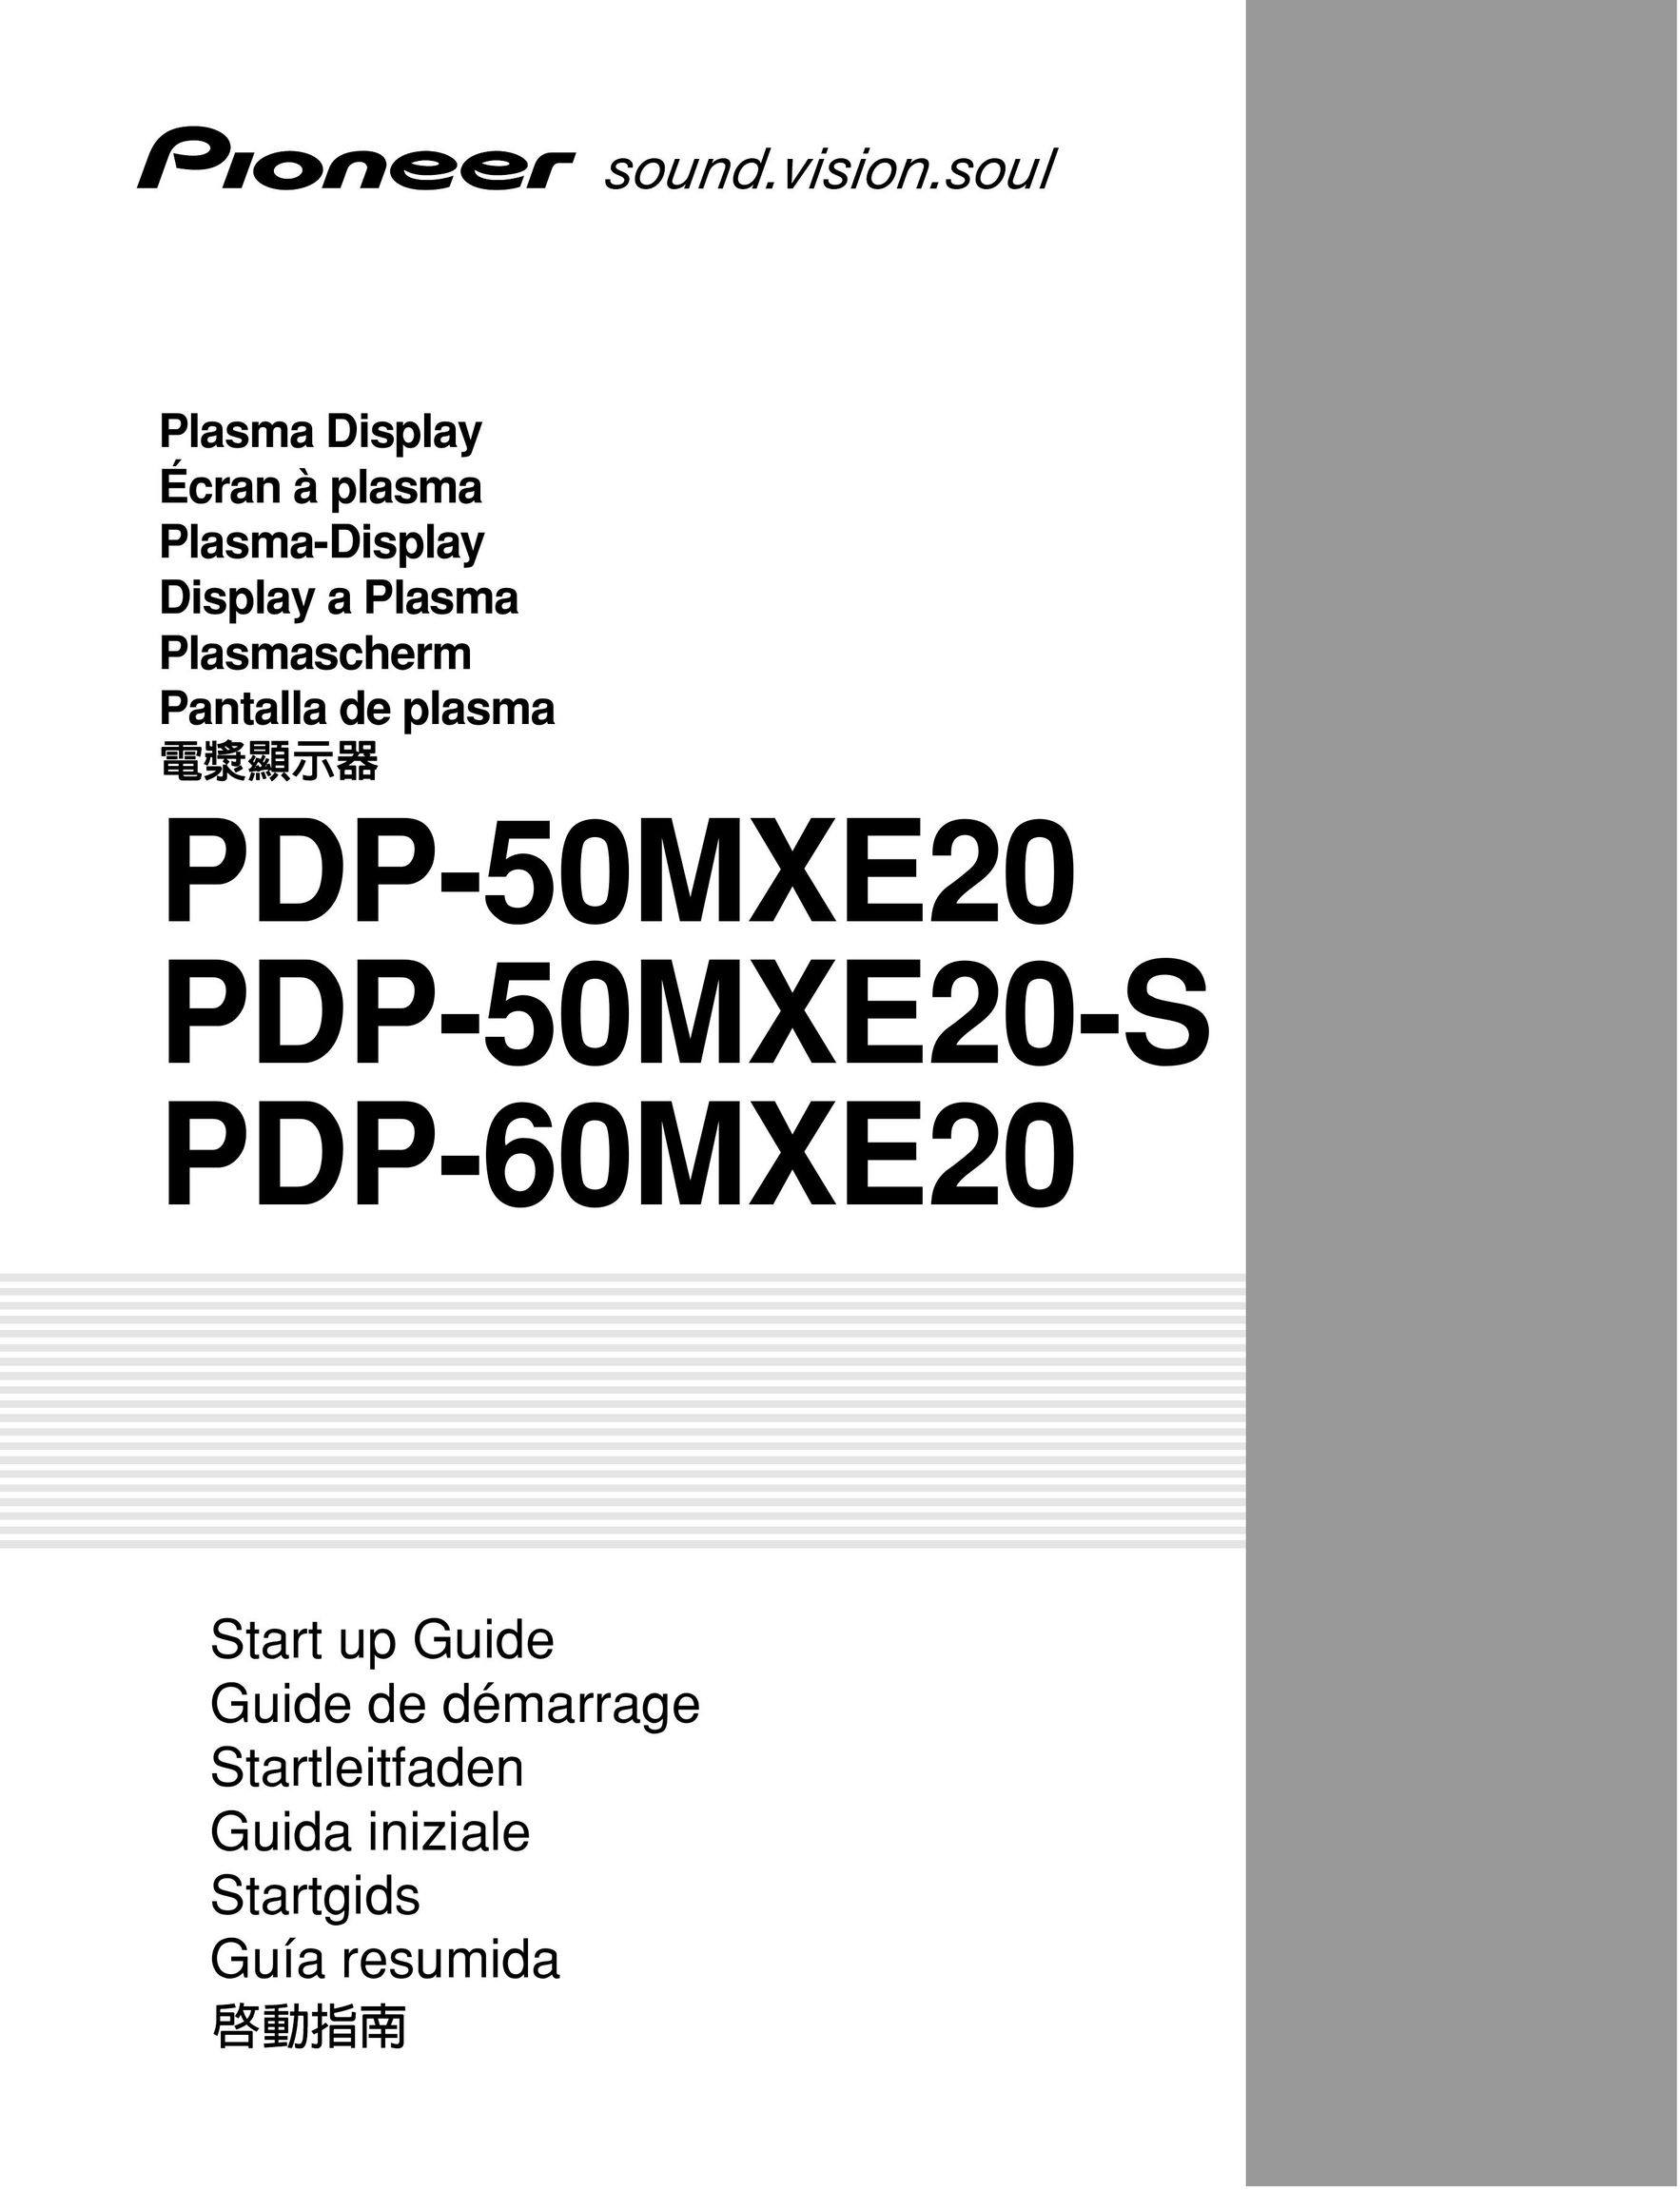 Pioneer PDP-50MXE20 Projector User Manual